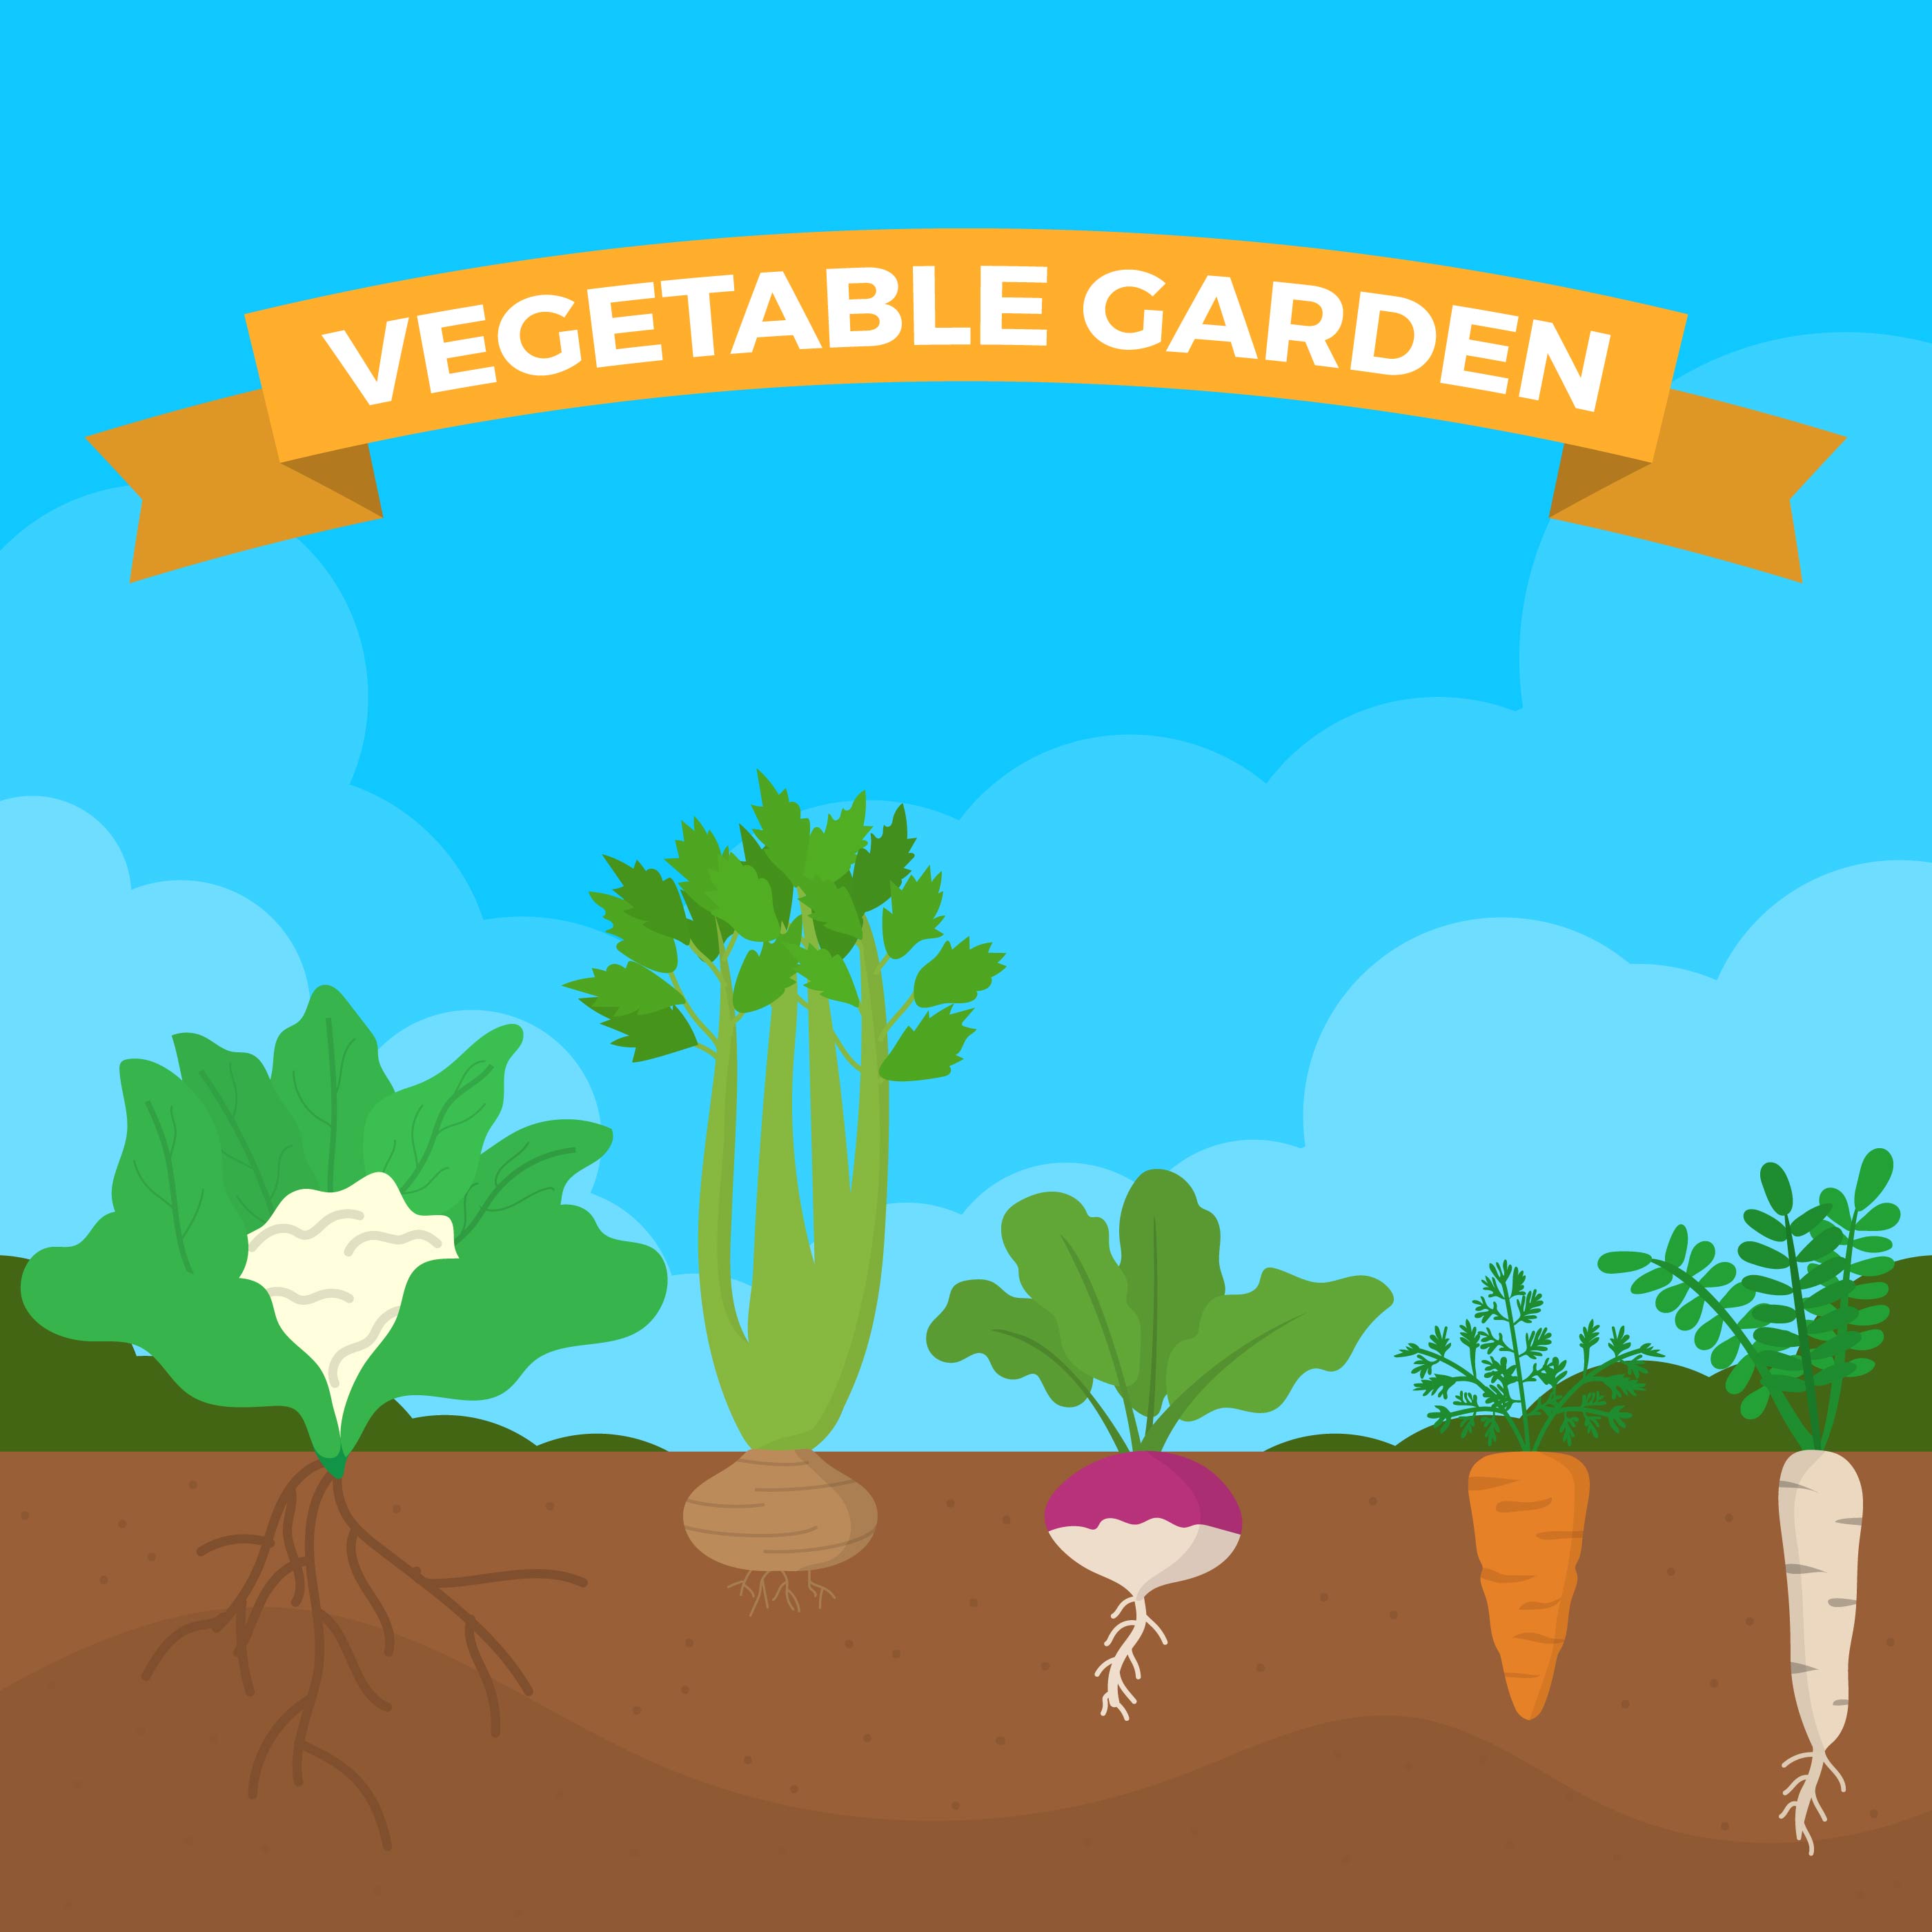 Download Flat Vegetable Garden Vector Illustration - Download Free ...